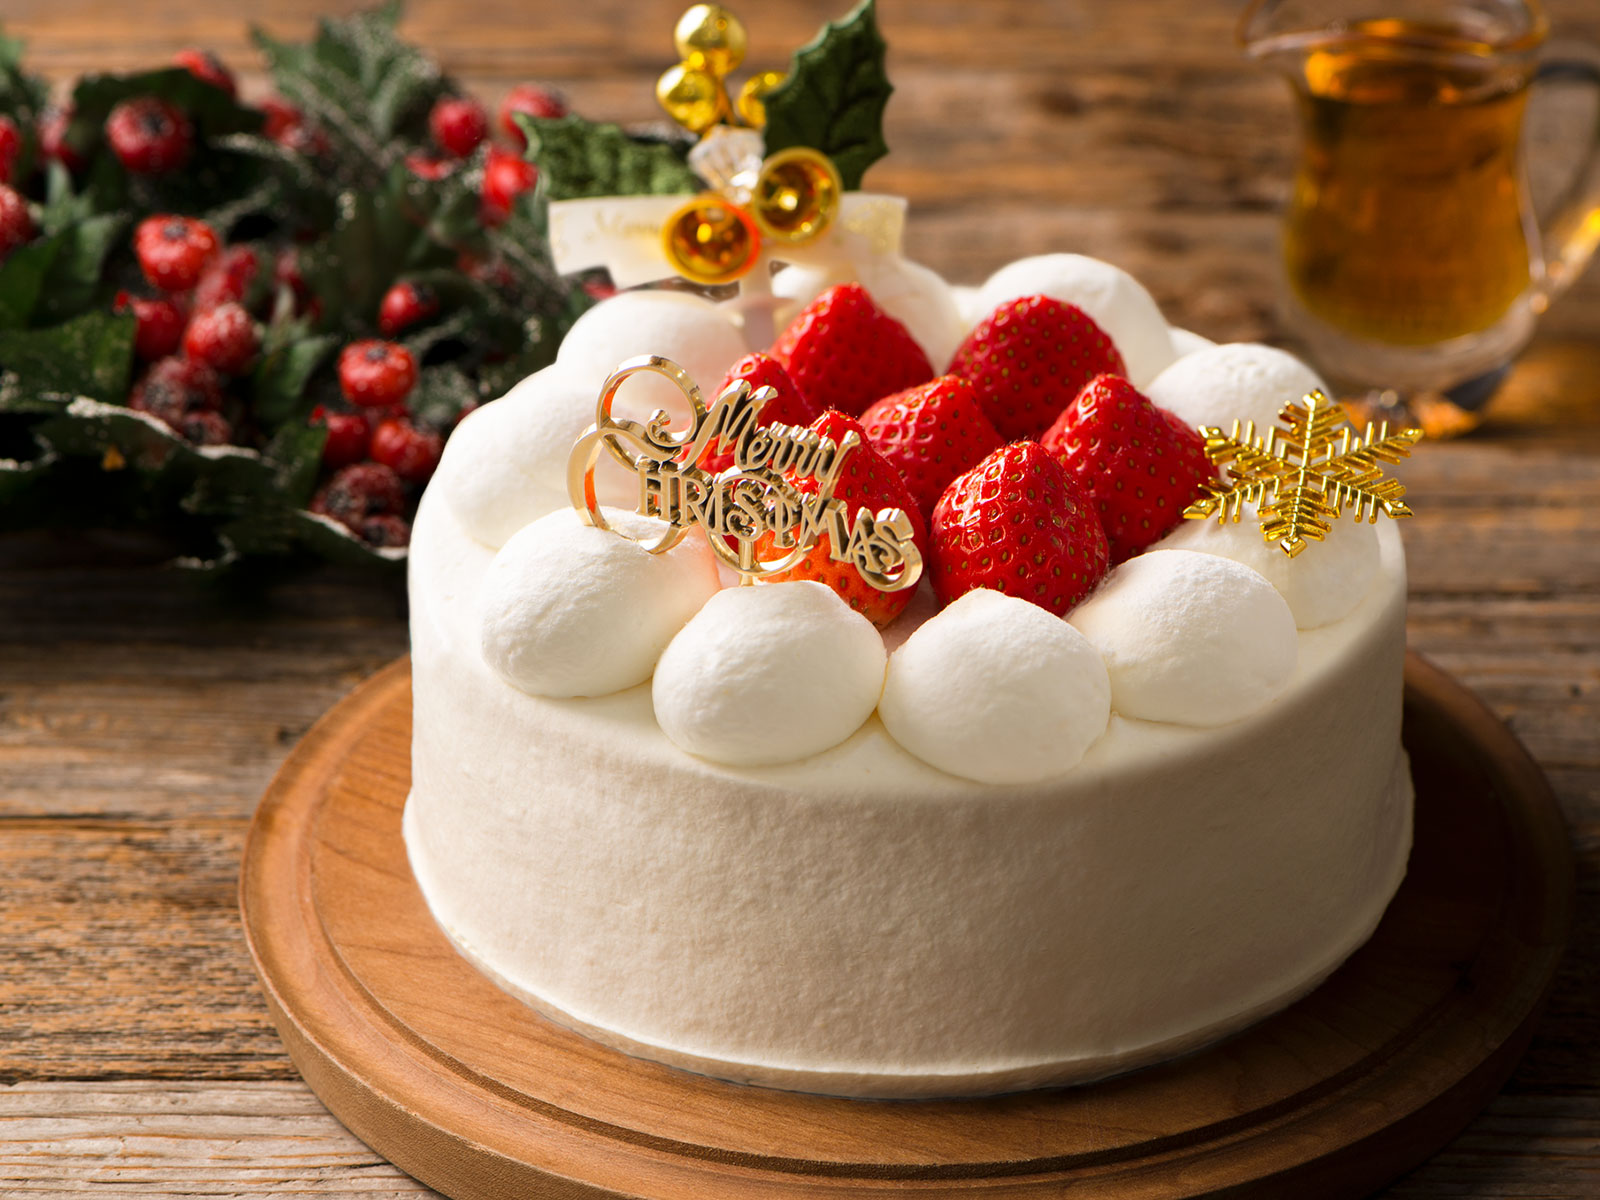 白砂糖 人工甘味料不使用 はちみつとメープルだけの甘さで仕上げた 自然の恵みを感じるクリスマスショートケーキ 11月1日ご予約スタート Qbgレディベア Newscast